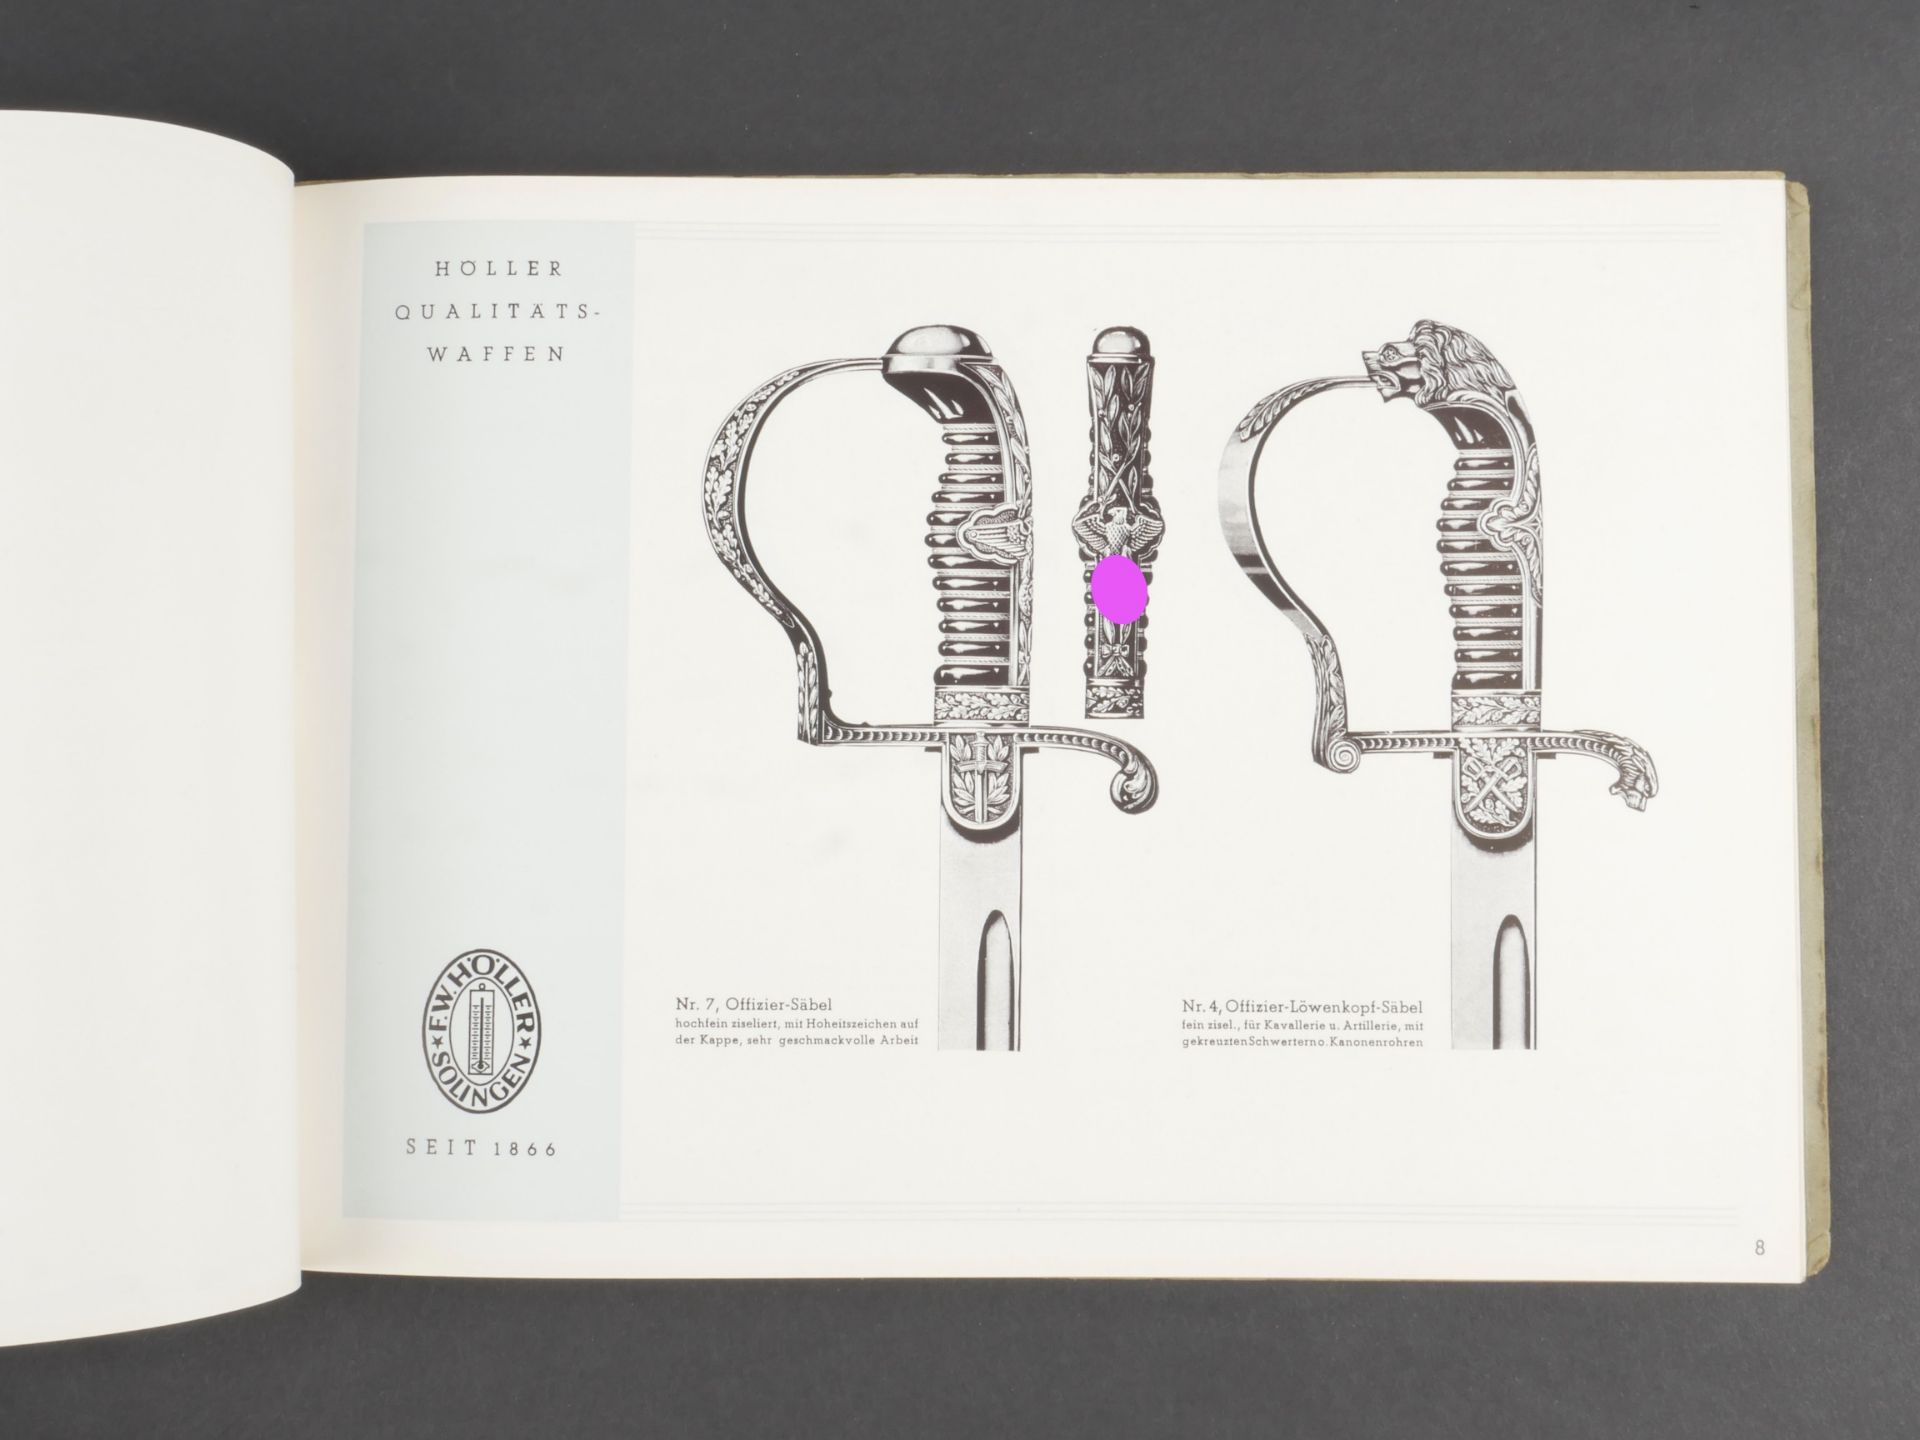 catalogues des fabricants de dague. Dagger manufacturers' catalogs. - Bild 10 aus 10